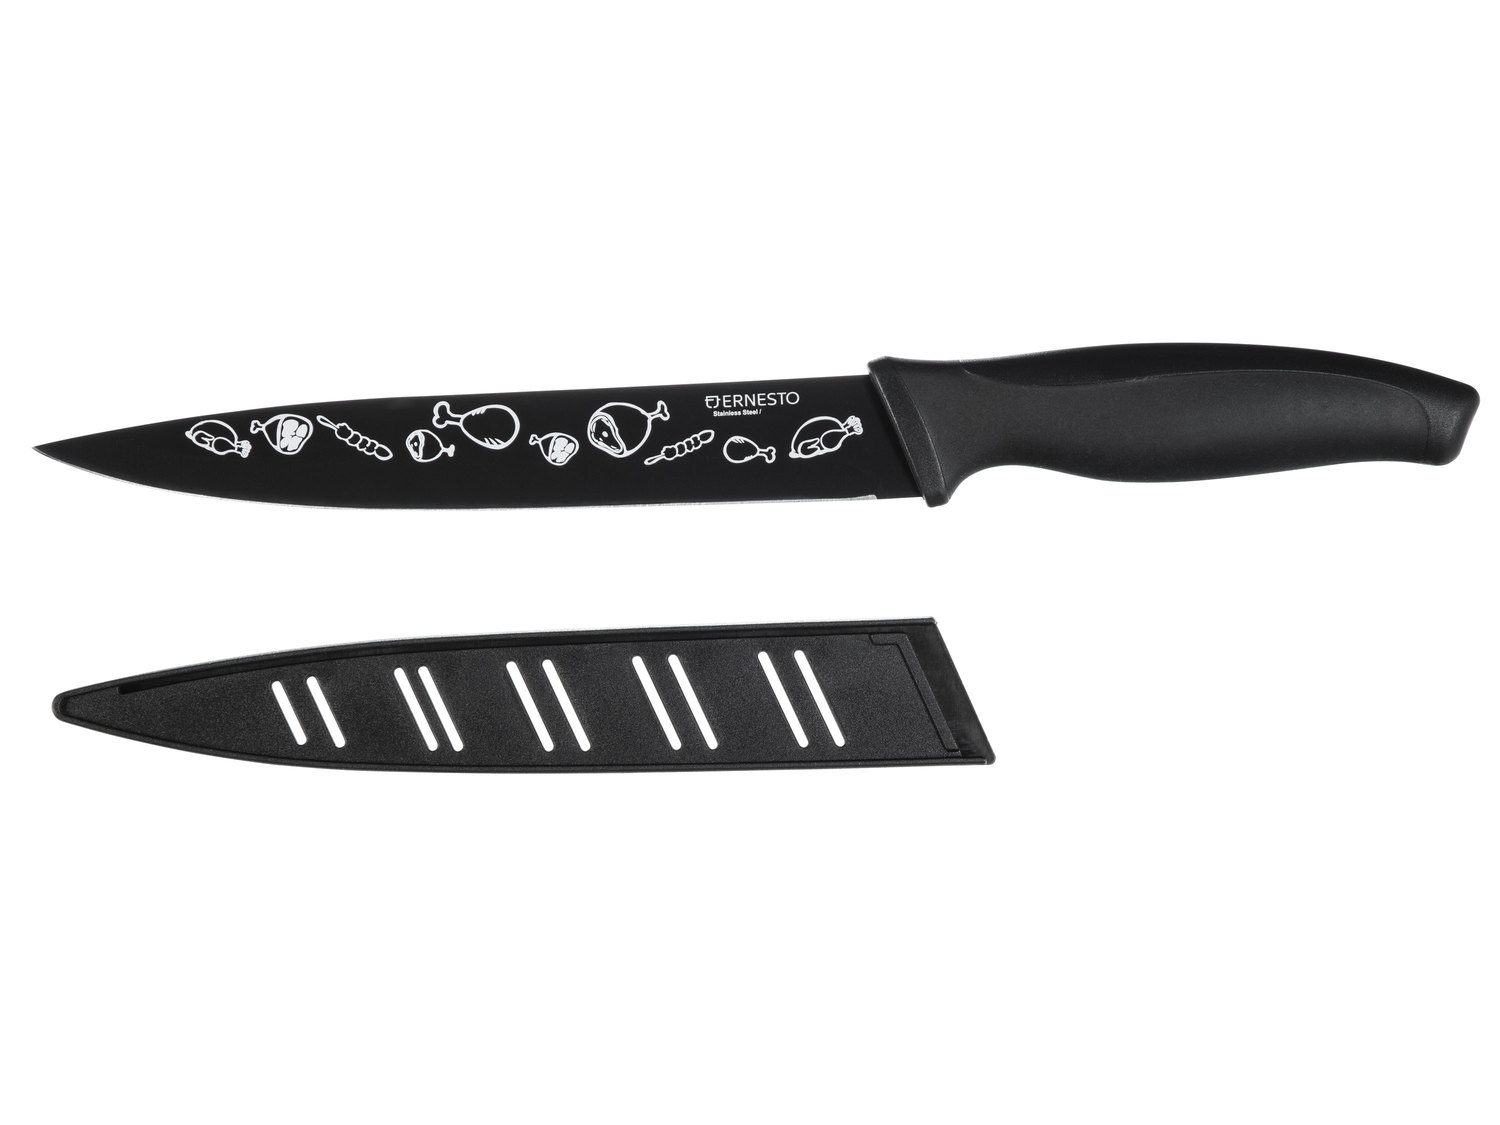 Nóż lub zestaw noży Ernesto, cena 12,99 PLN 
- ostrza ze stali nierdzewnej
- ...